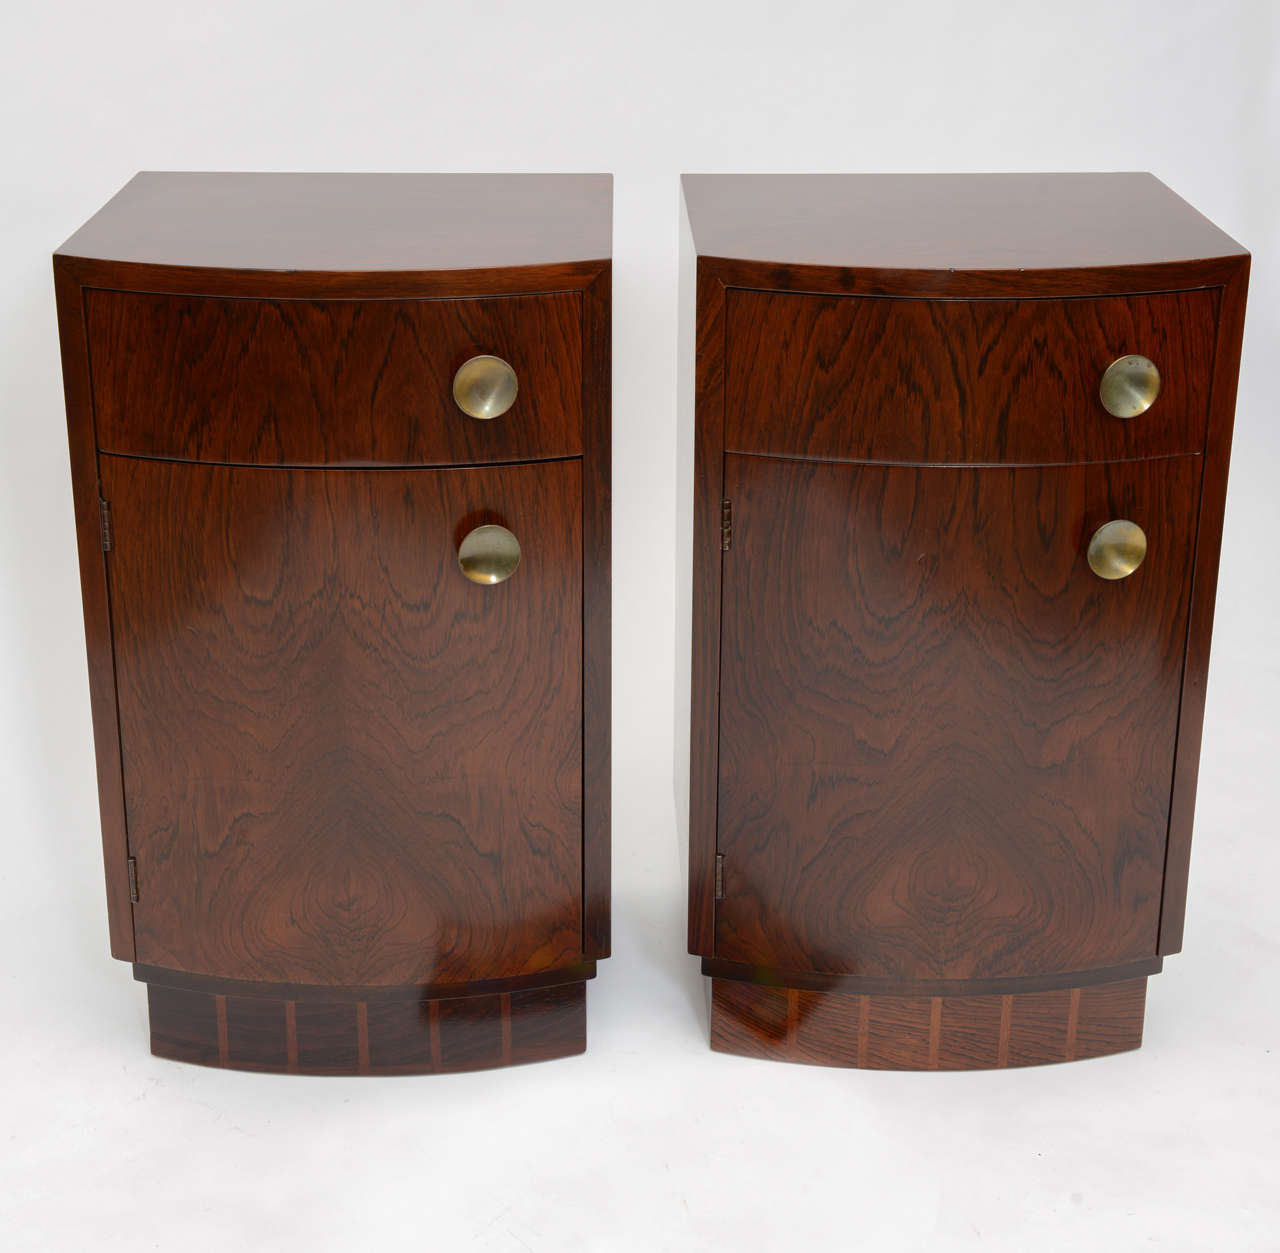 Ein praktisches Paar Nachttische aus brasilianischem Palisanderholz,
entworfen von Gilbert Rohde Modell # 3770